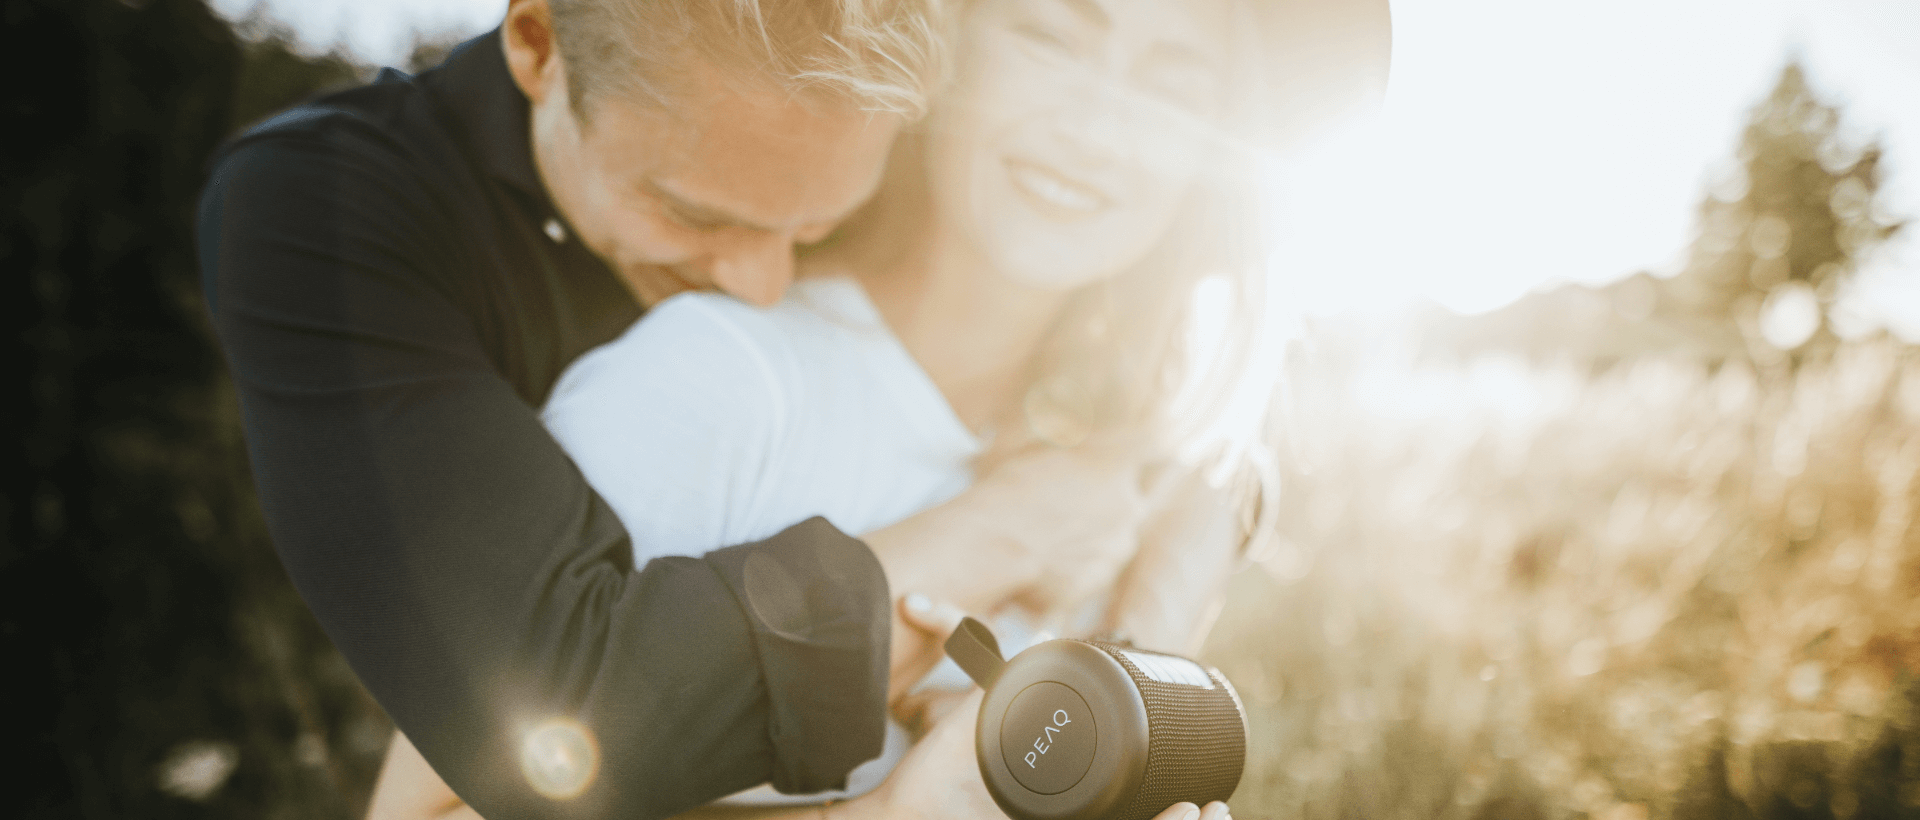 Uma mulher jovem segura na mão um altifalante Bluetooth da marca PEAQ, um homem jovem abraça-a por trás, ambos riem, ao ar livre, sol em segundo plano